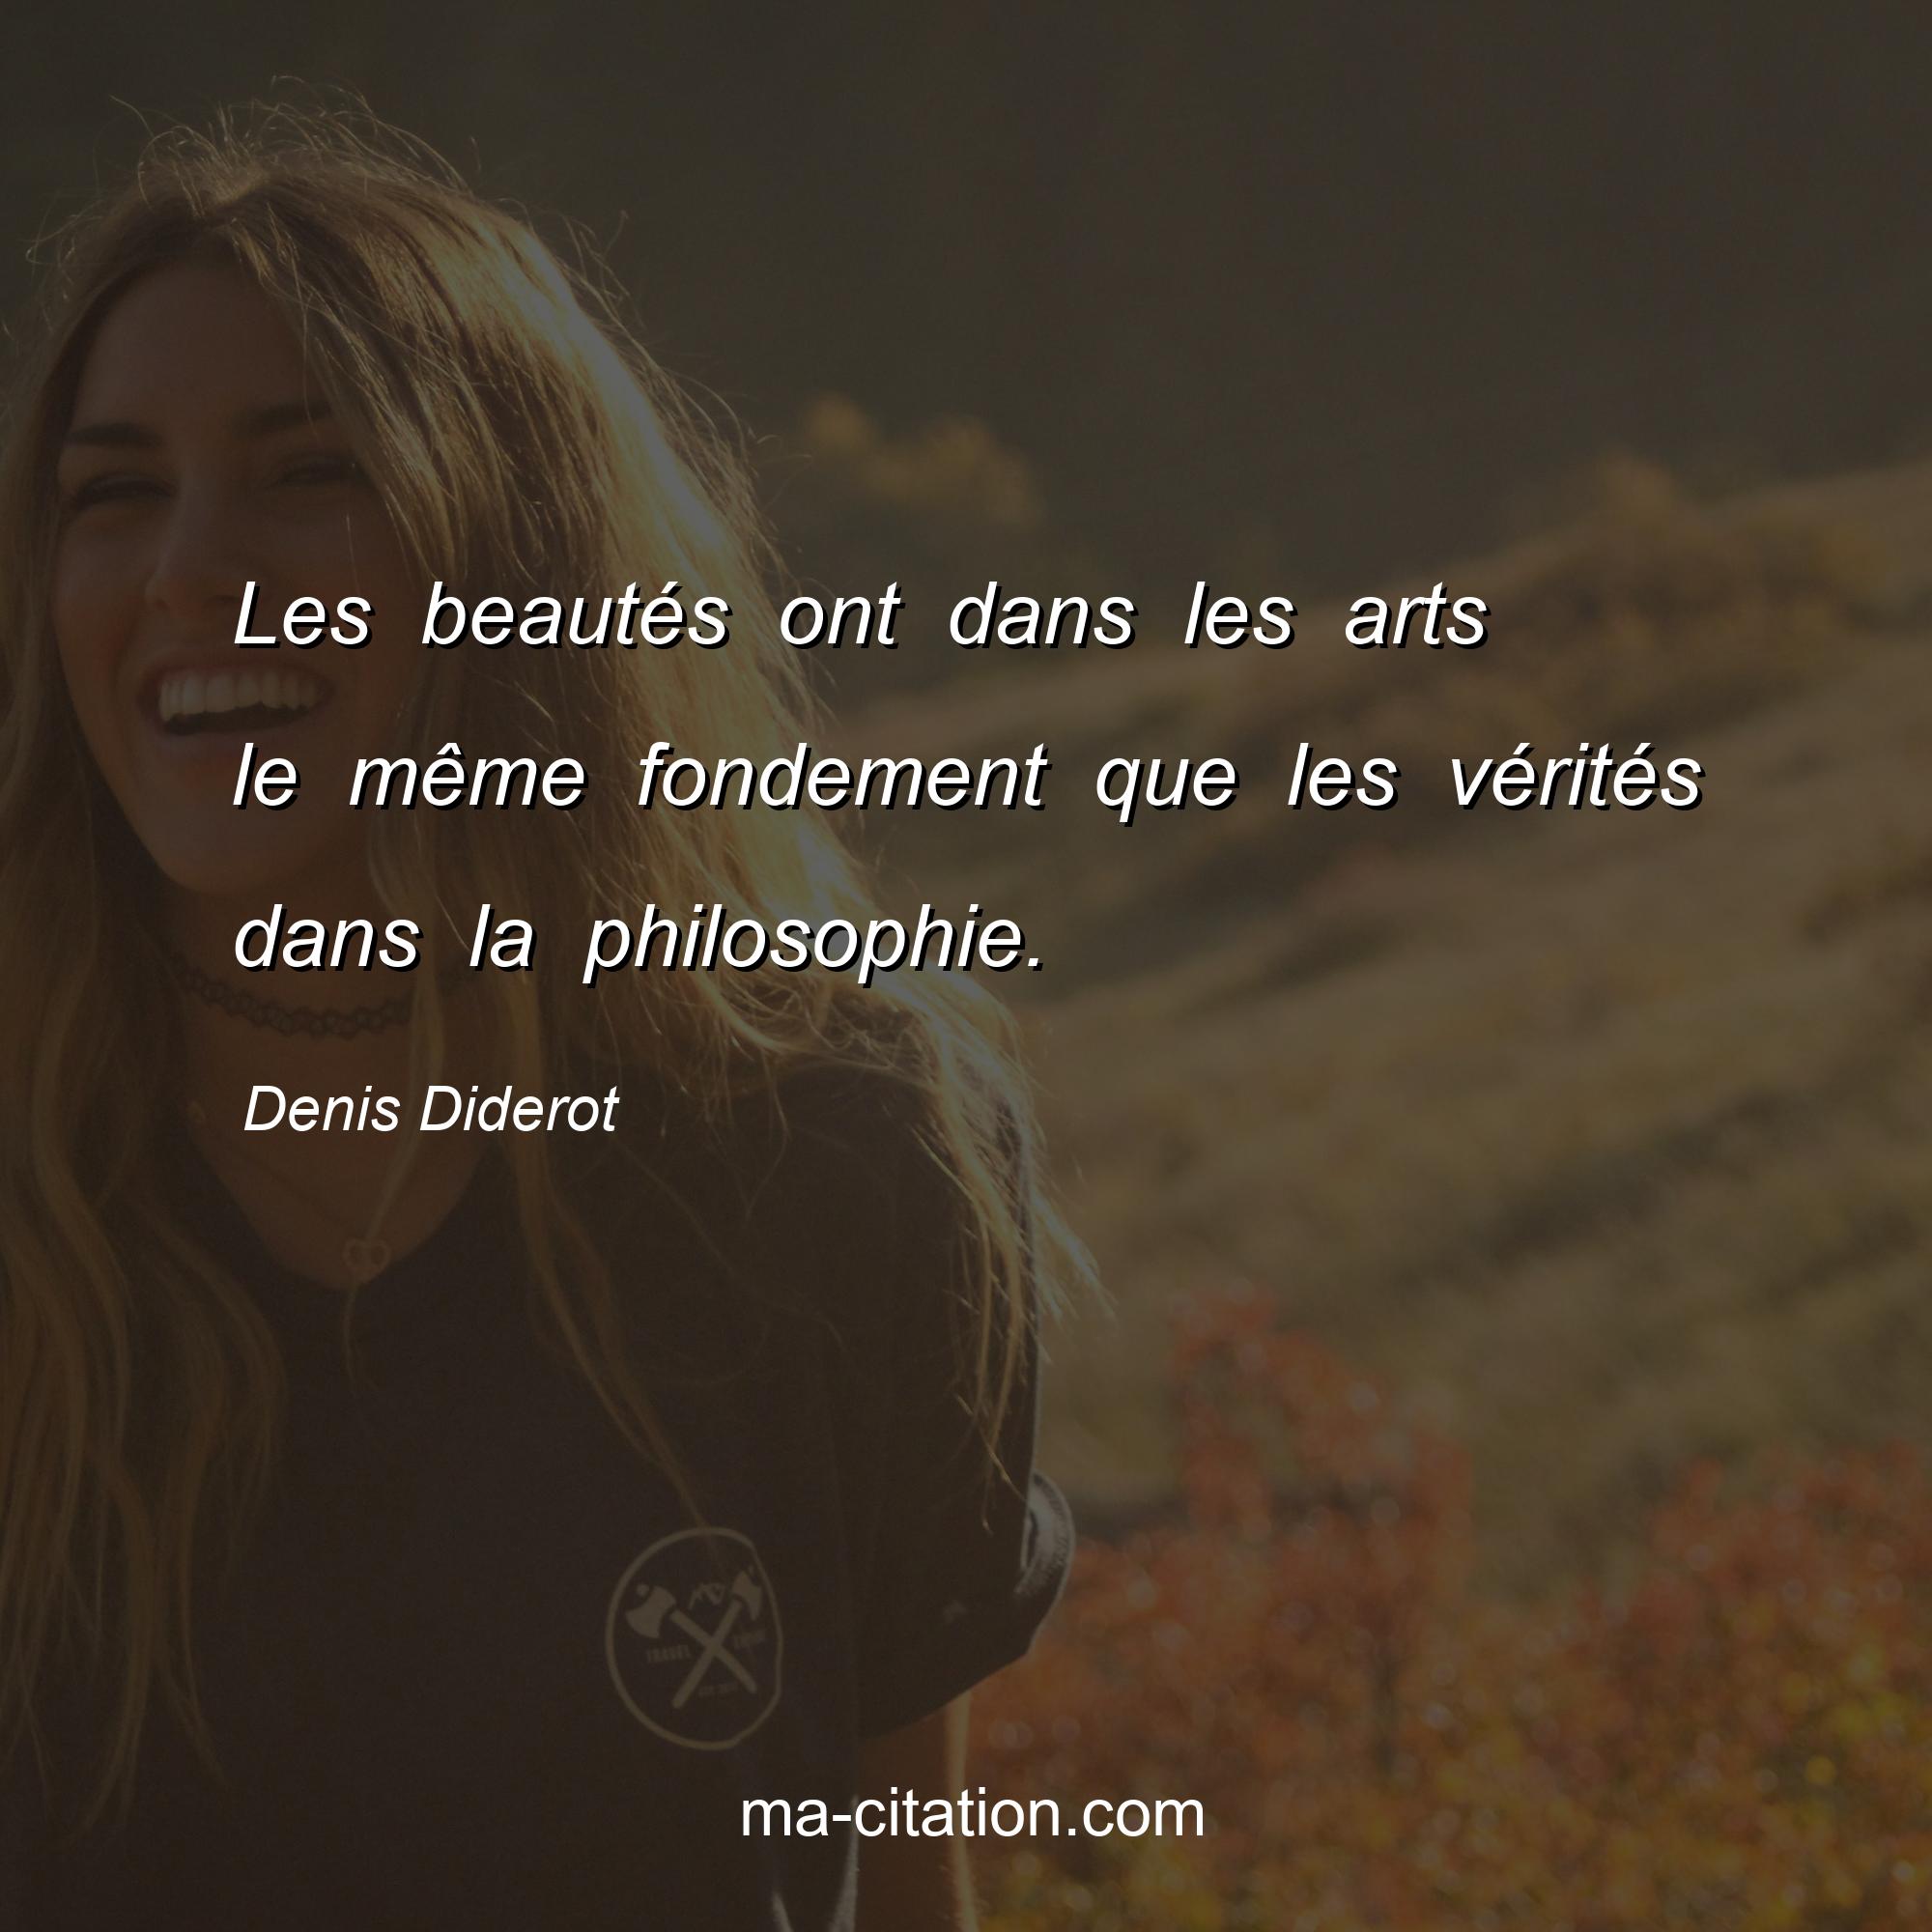 Denis Diderot : Les beautés ont dans les arts le même fondement que les vérités dans la philosophie.